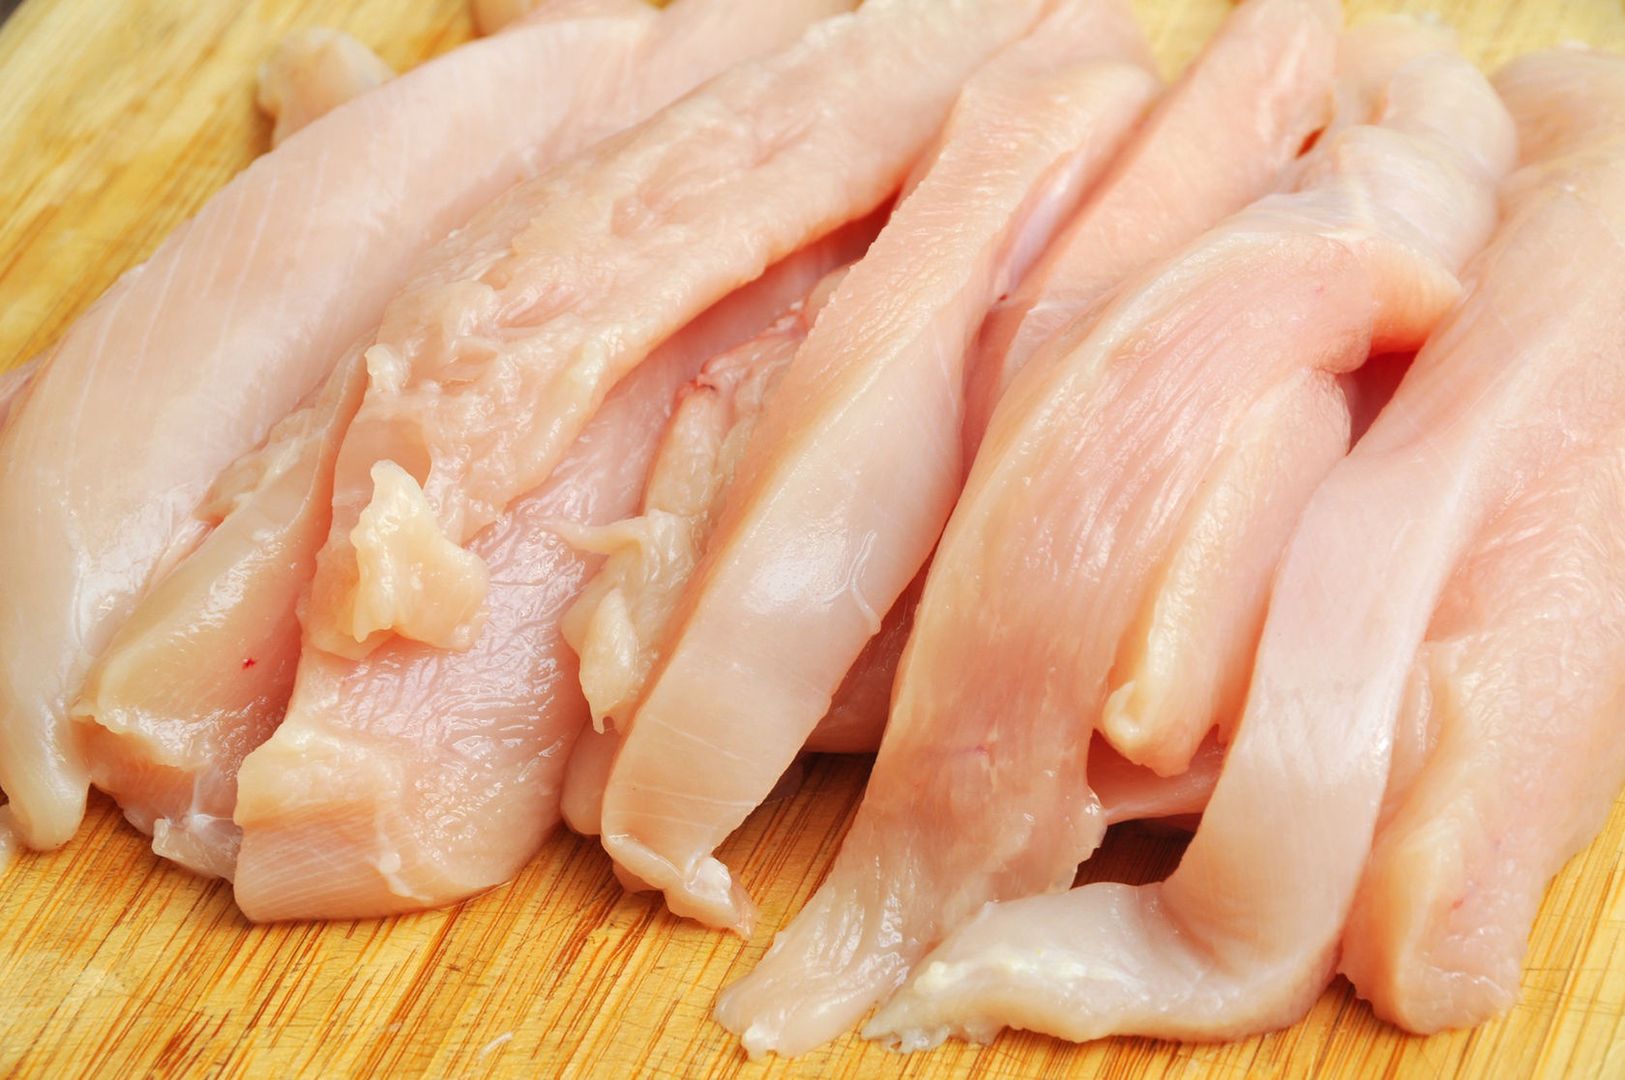 Sprawdziliśmy, które mięso z kurczaka jest najzdrowsze. Możesz się zdziwić